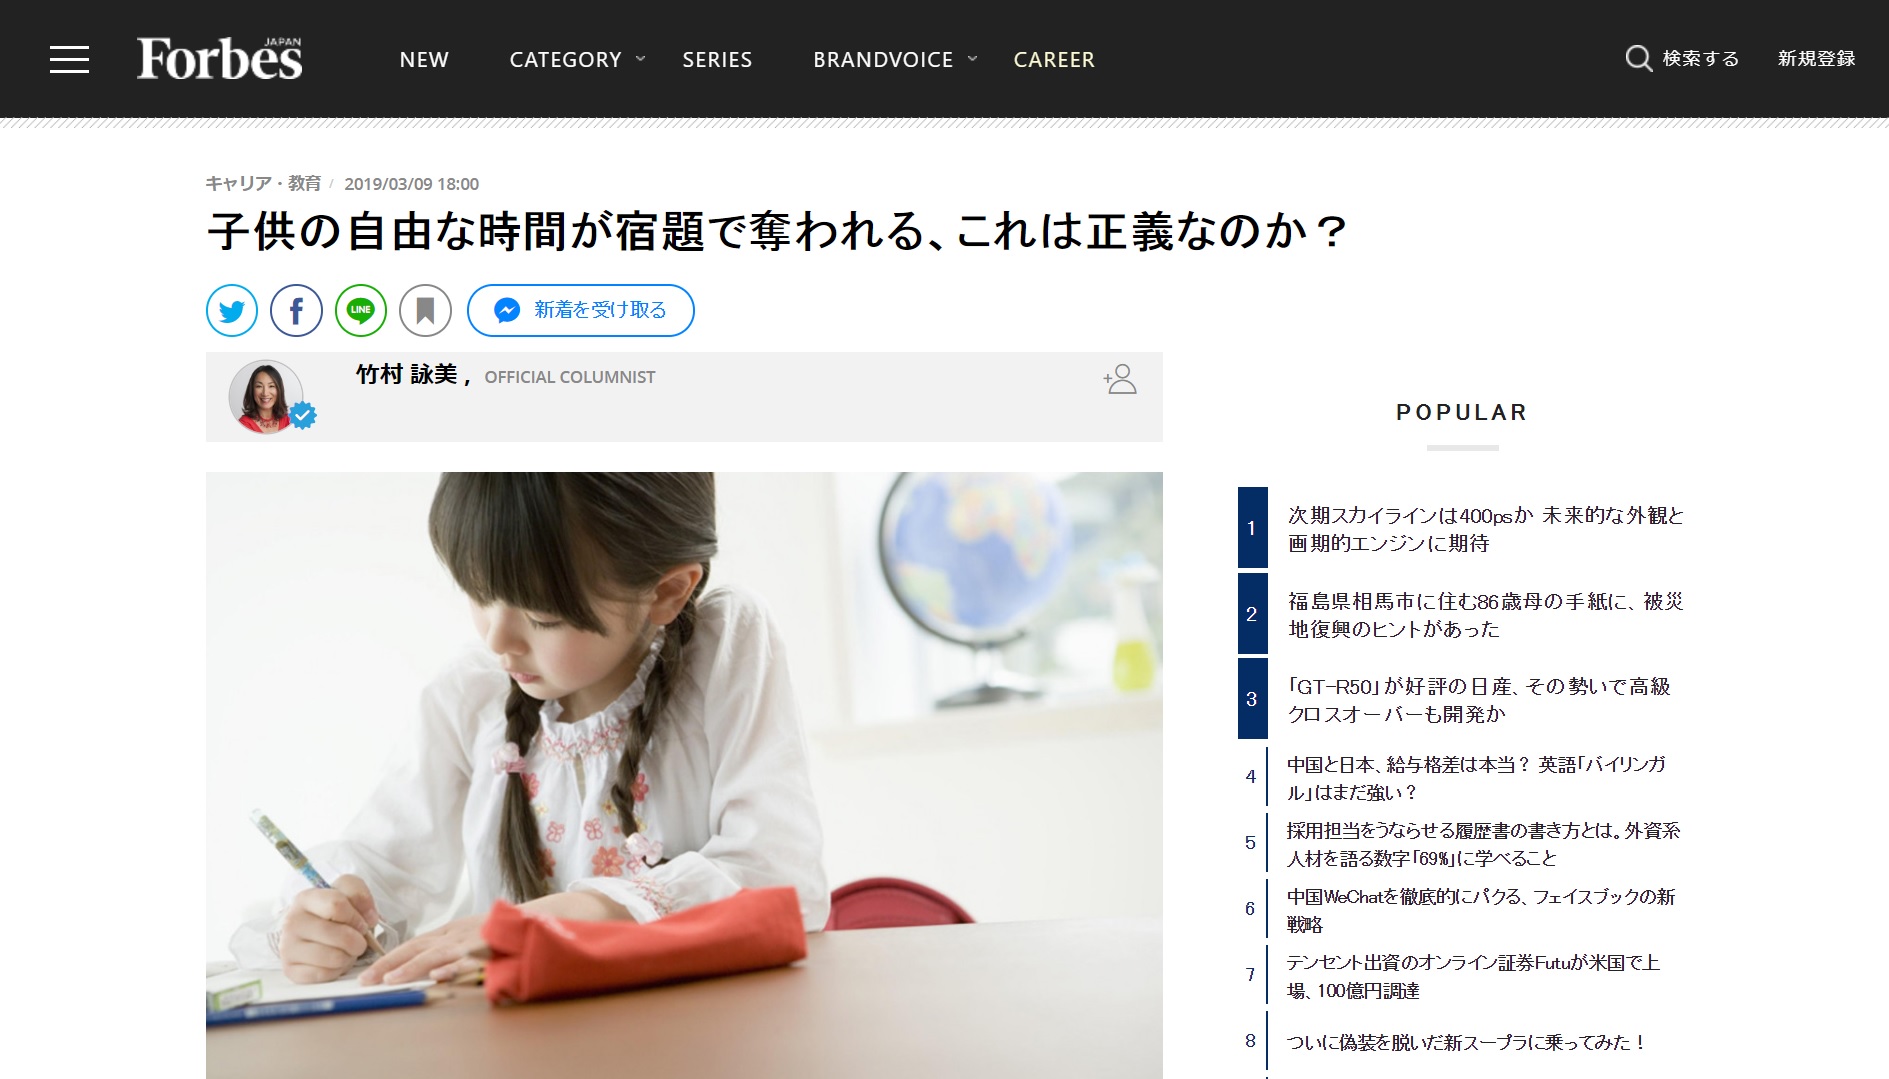 メディア掲載 Forbes Japan 子供の自由な時間が宿題で奪われる これは正義なのか Future Edu Tokyo